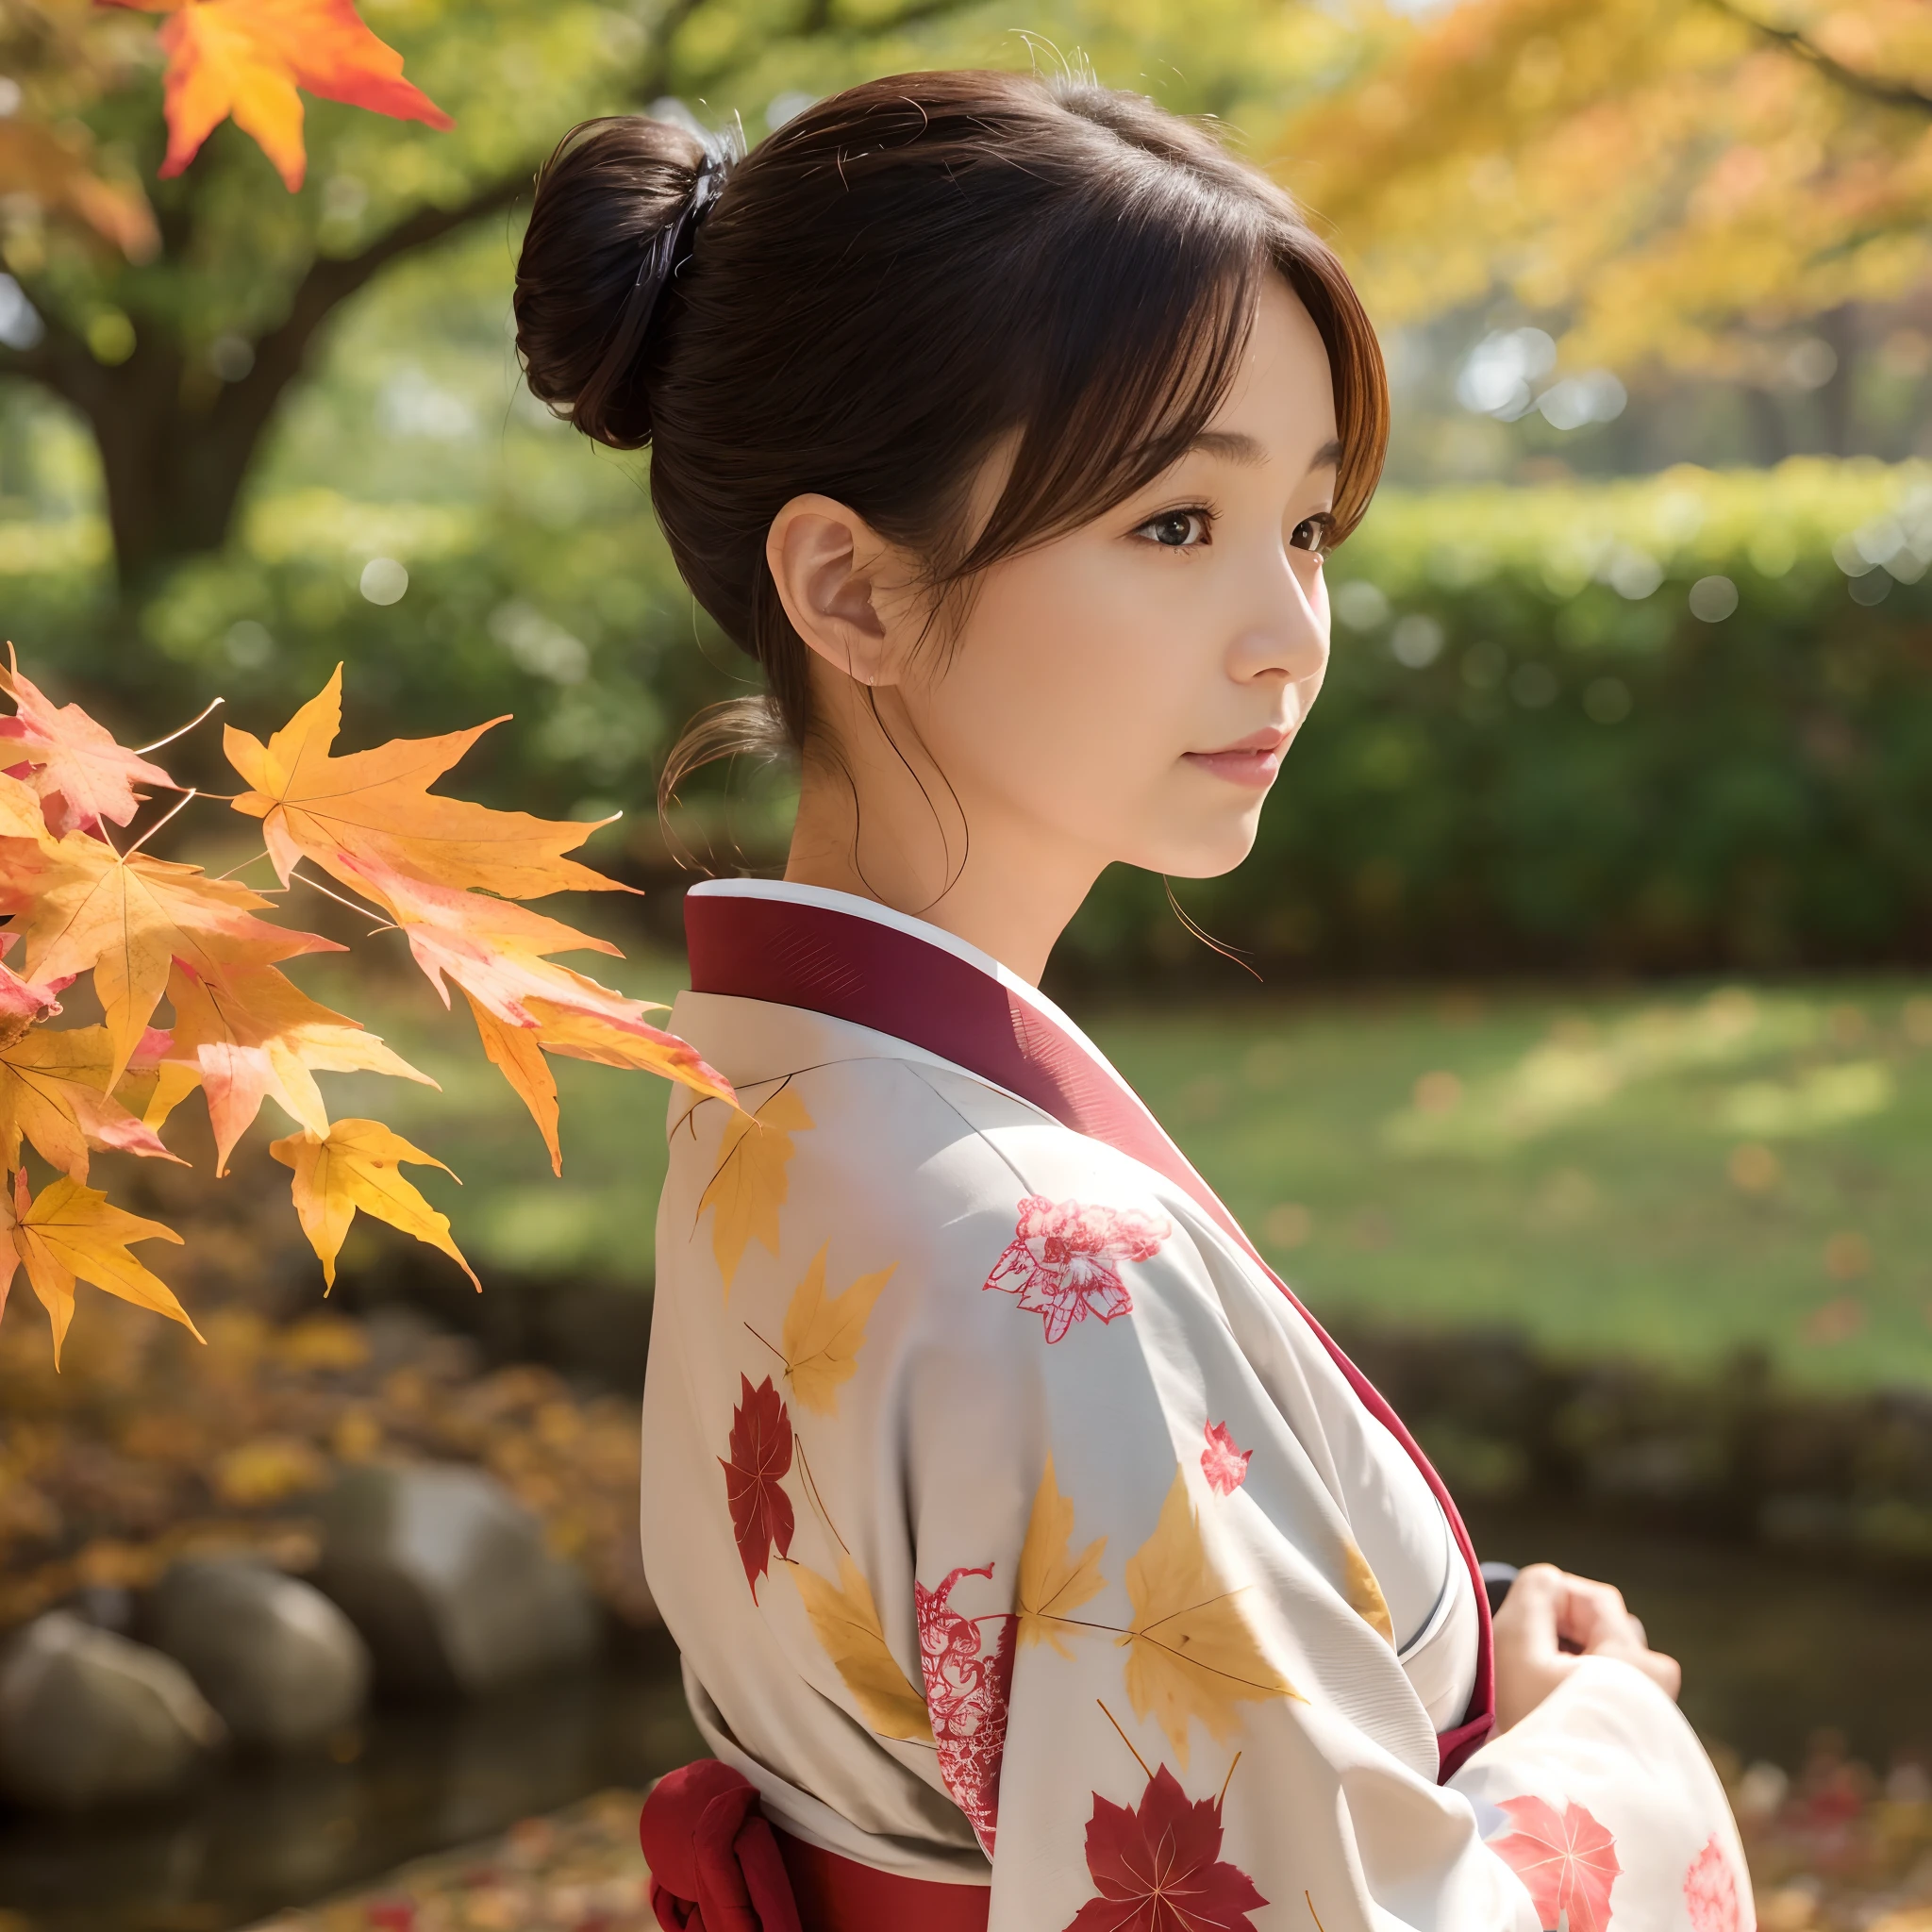 40 多岁女性、穿干净的日本和服、头发竖起来、秋叶背景、